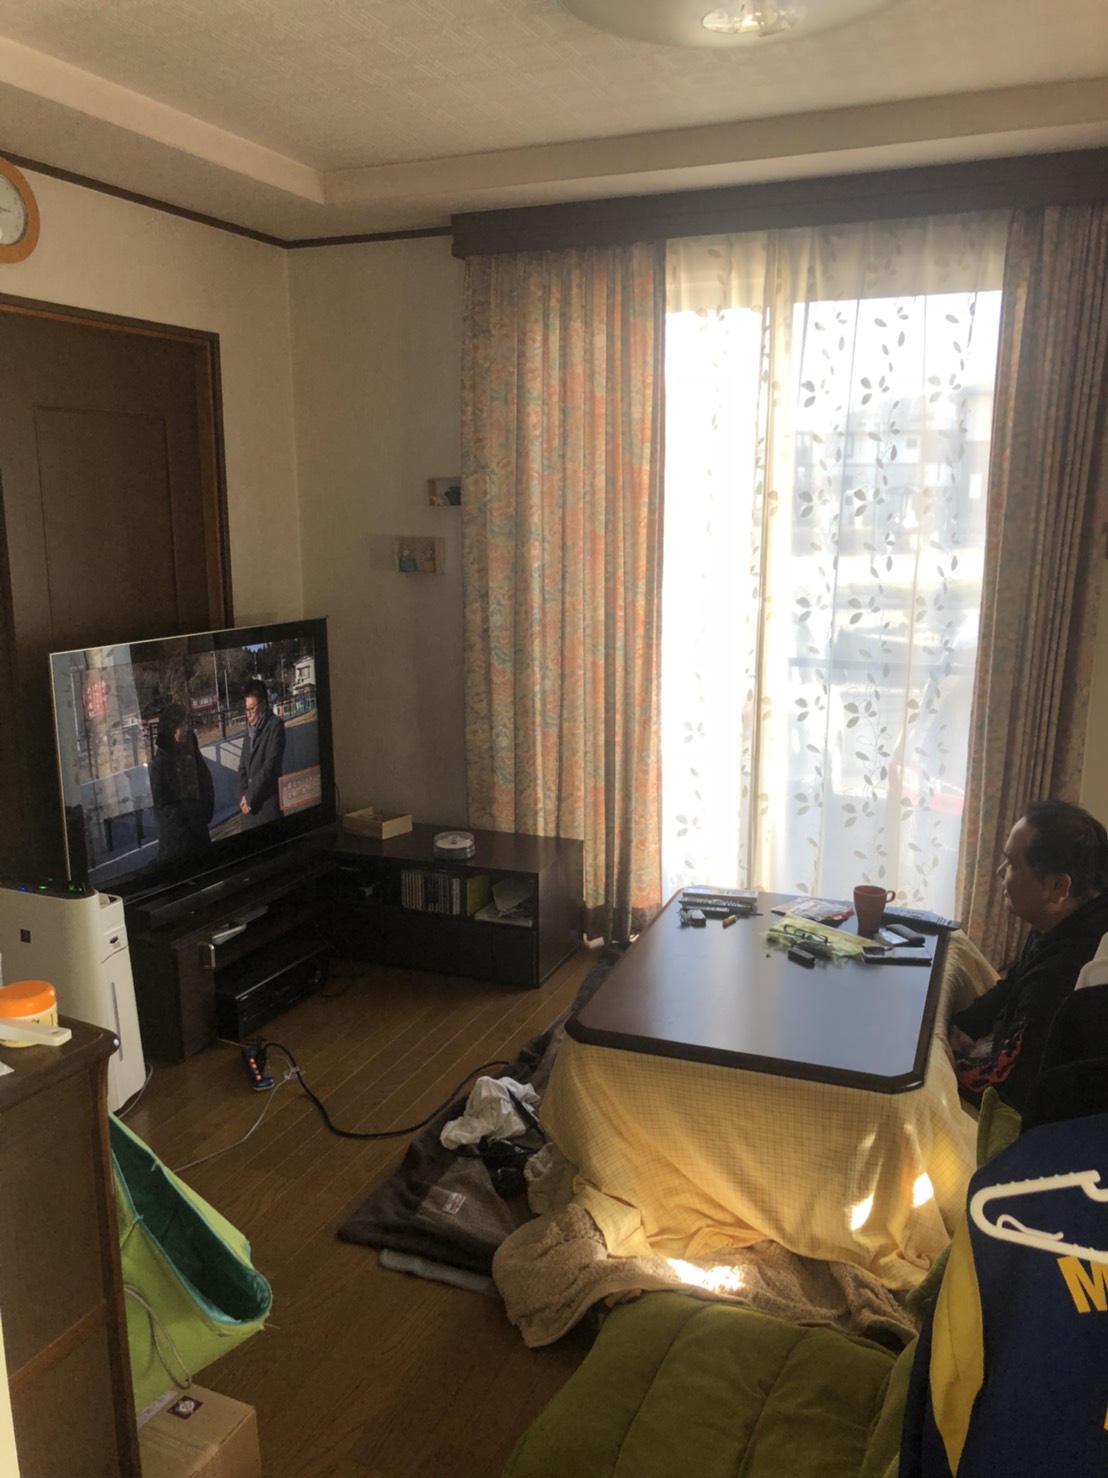 コタツでテレビを視聴する男性